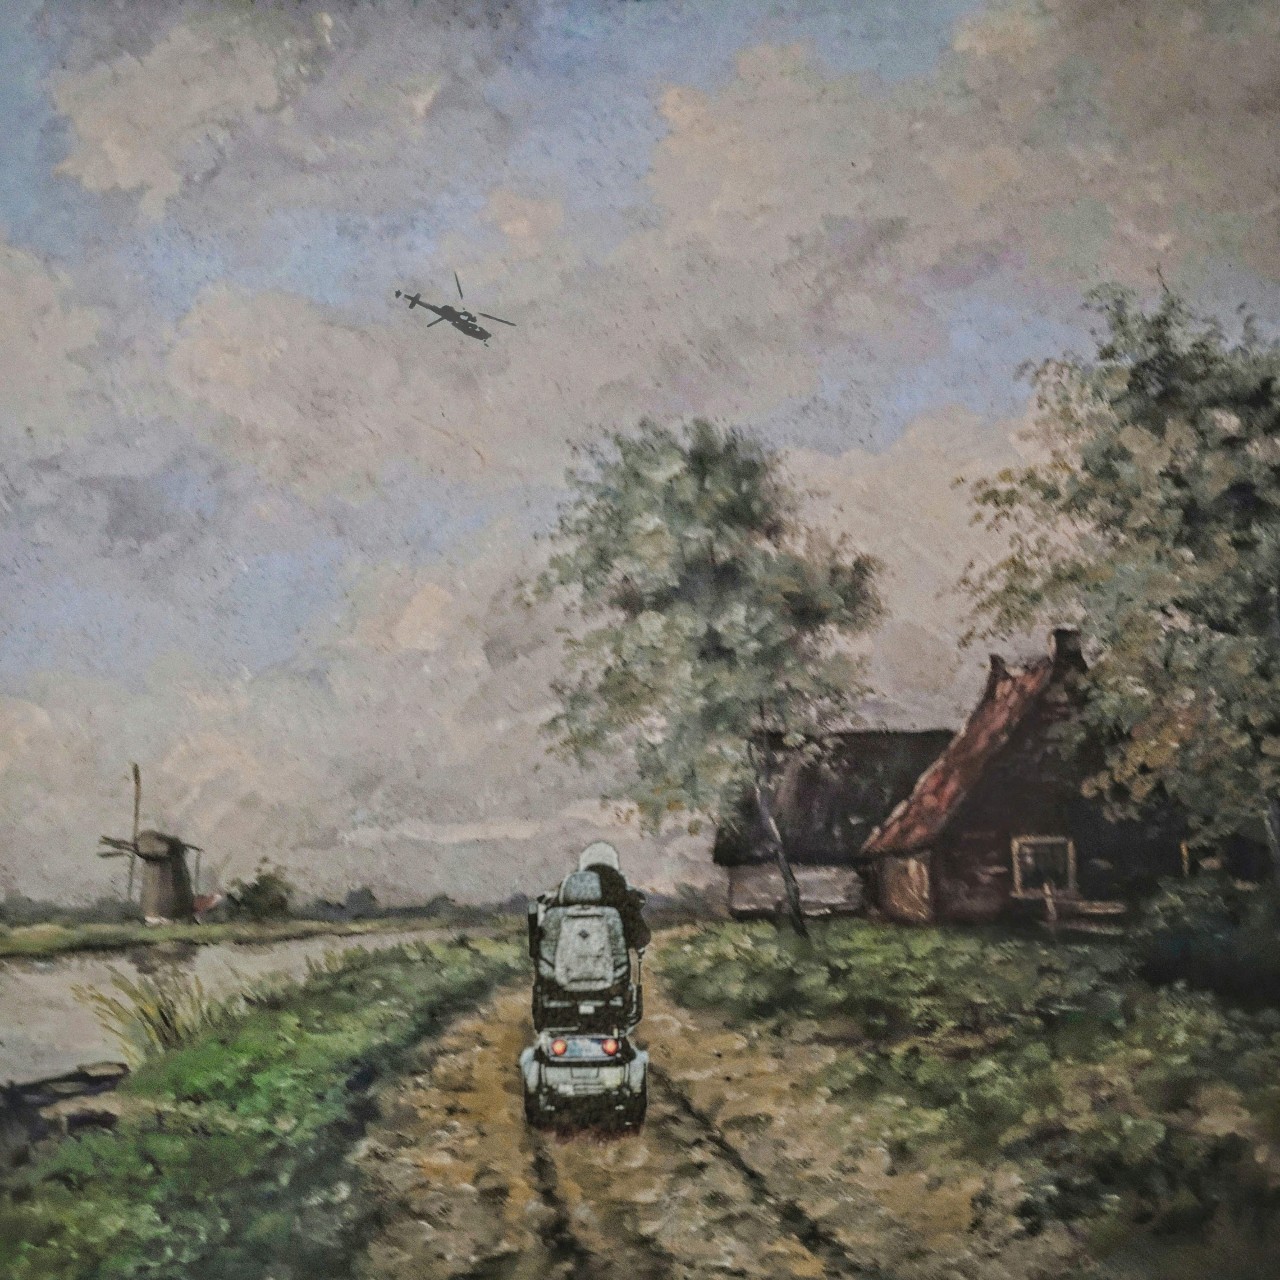 Een schilderij van een rivieren landschapje is voorzien van een scootmobiel  en helikopter. Smartphoneart van Ruben van Gogh